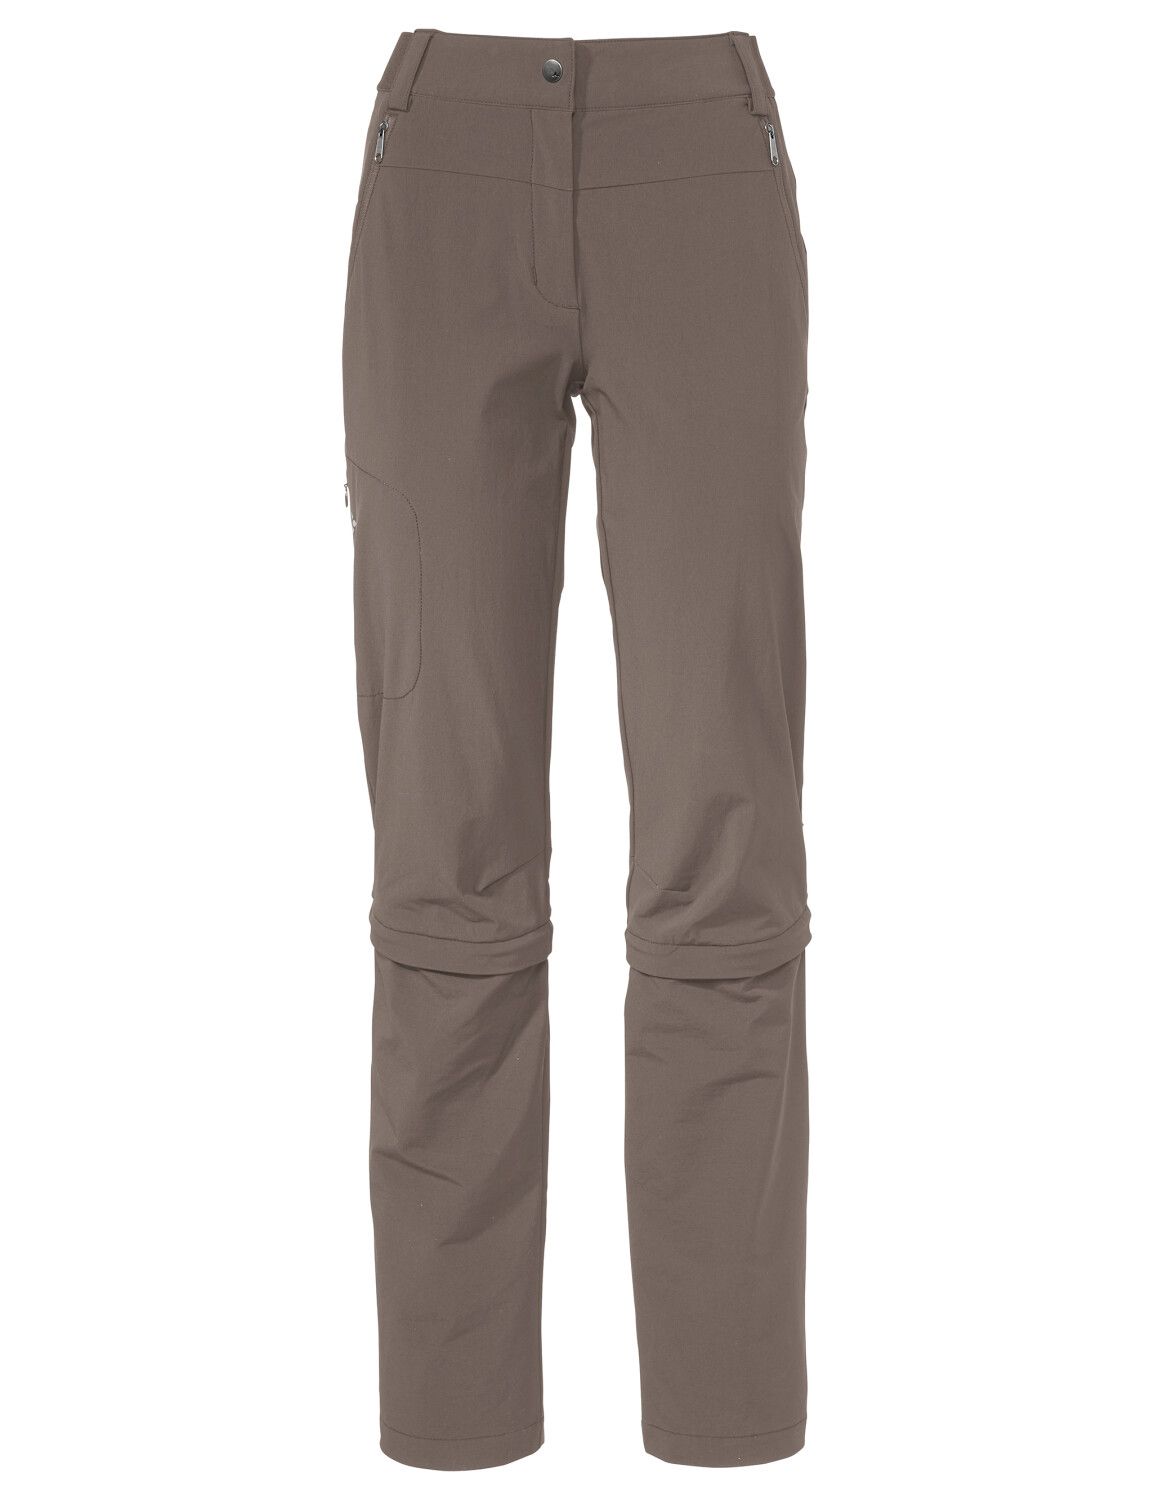 VAUDE Women's Farley Stretch Capri T-Zip Pants III (Bild 24)